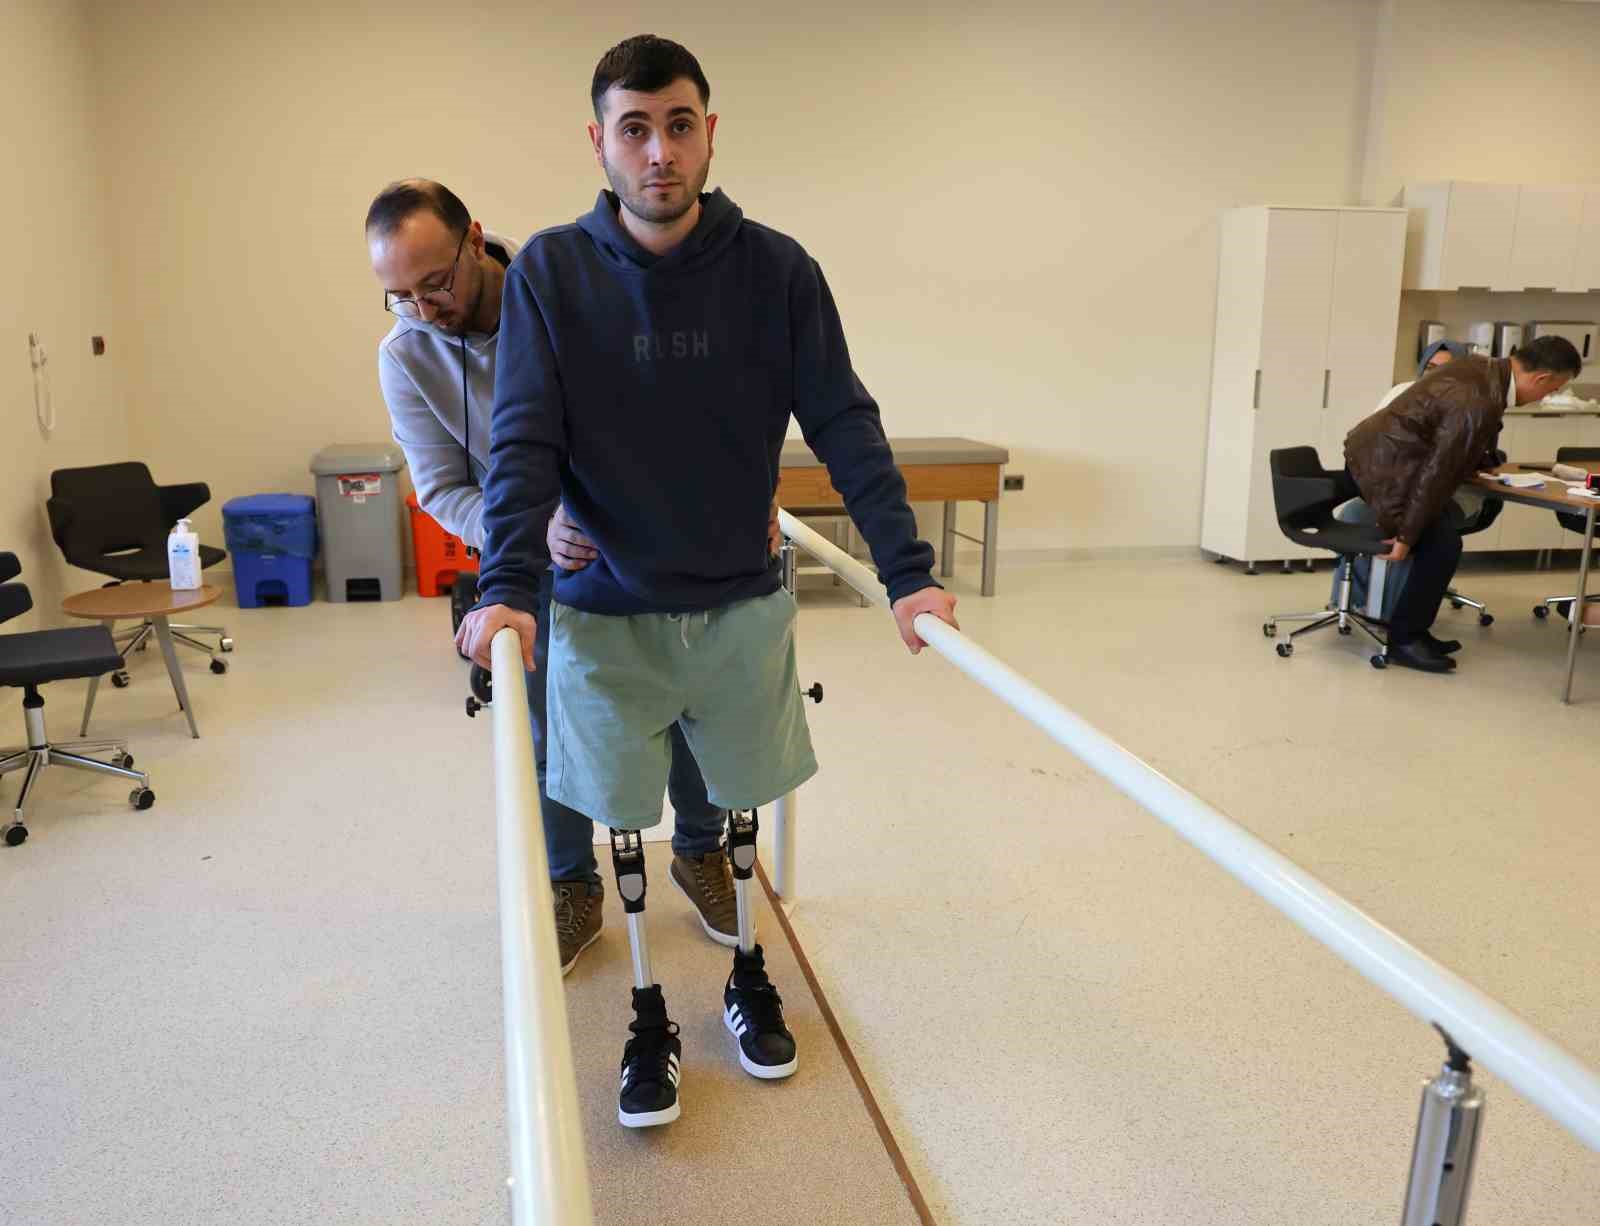 Enkazdan 116 saat sonra kurtulan Alperen, 10 ay sonra protez bacaklarına kavuştu